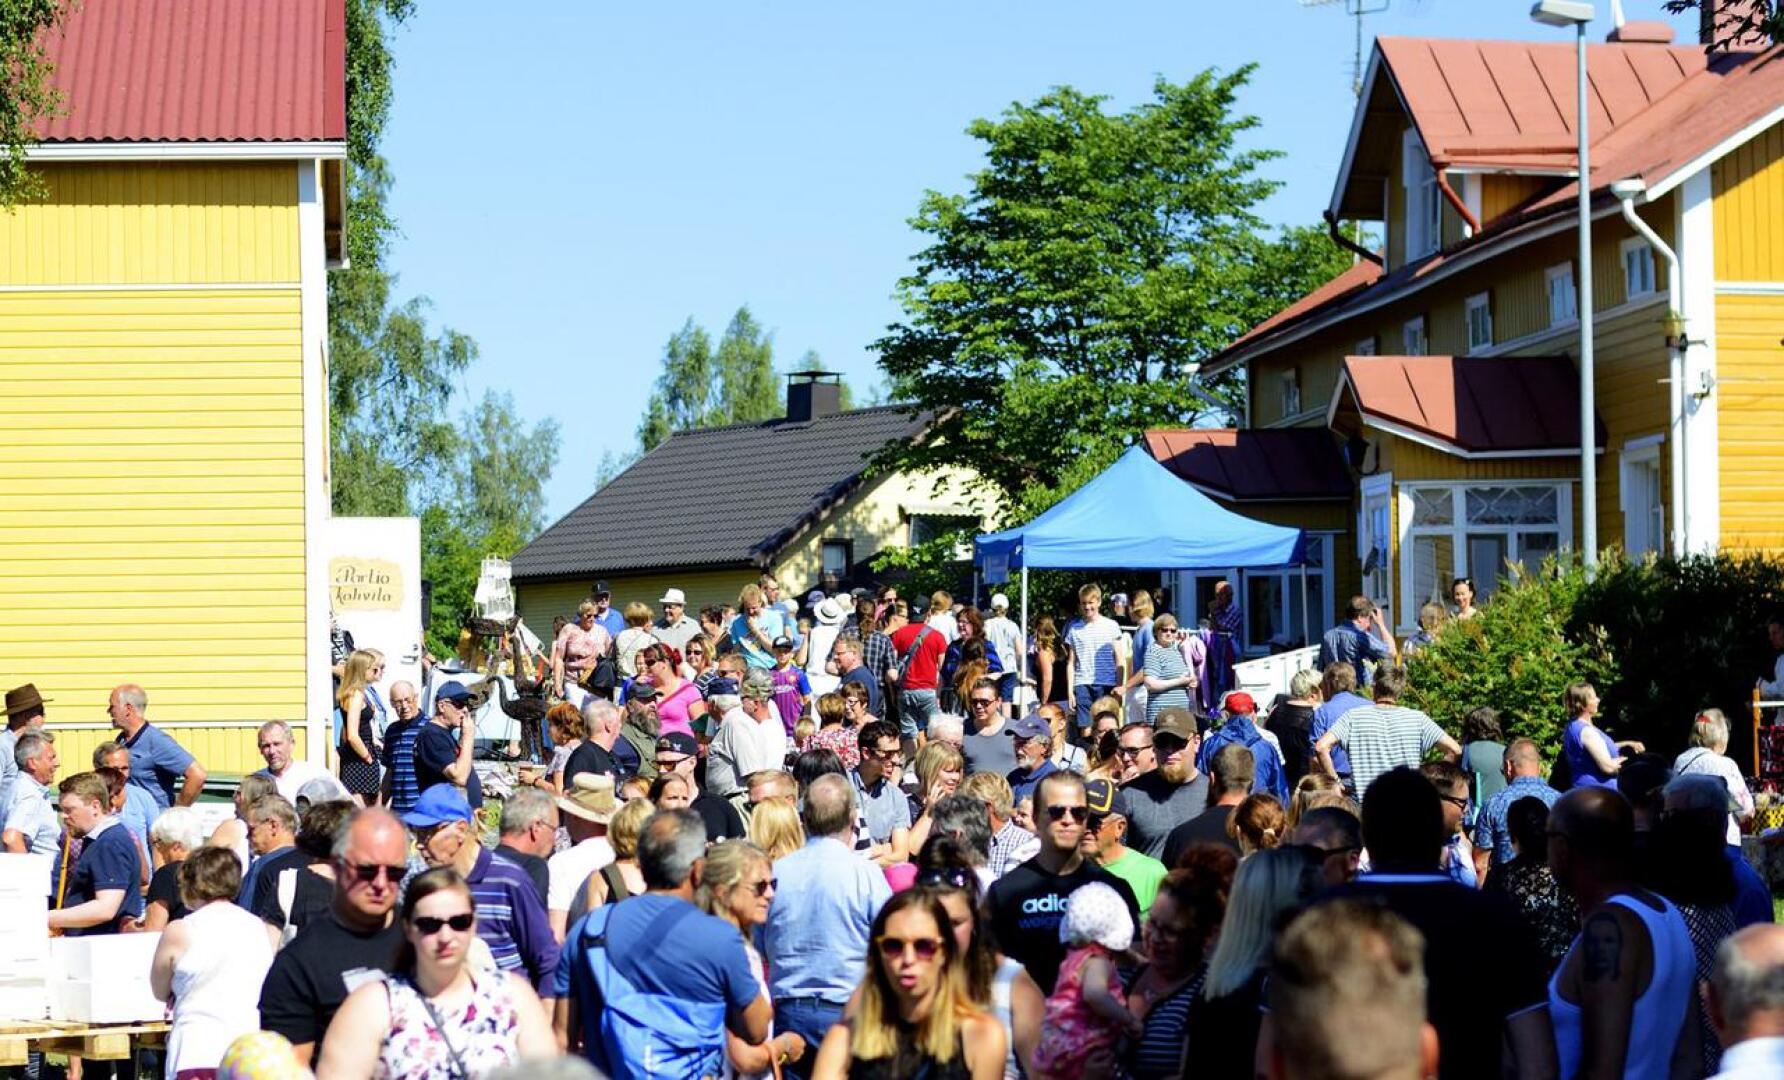 Raumankarin markkinoilla kävi viime vuonna noin 4000 kävijää.